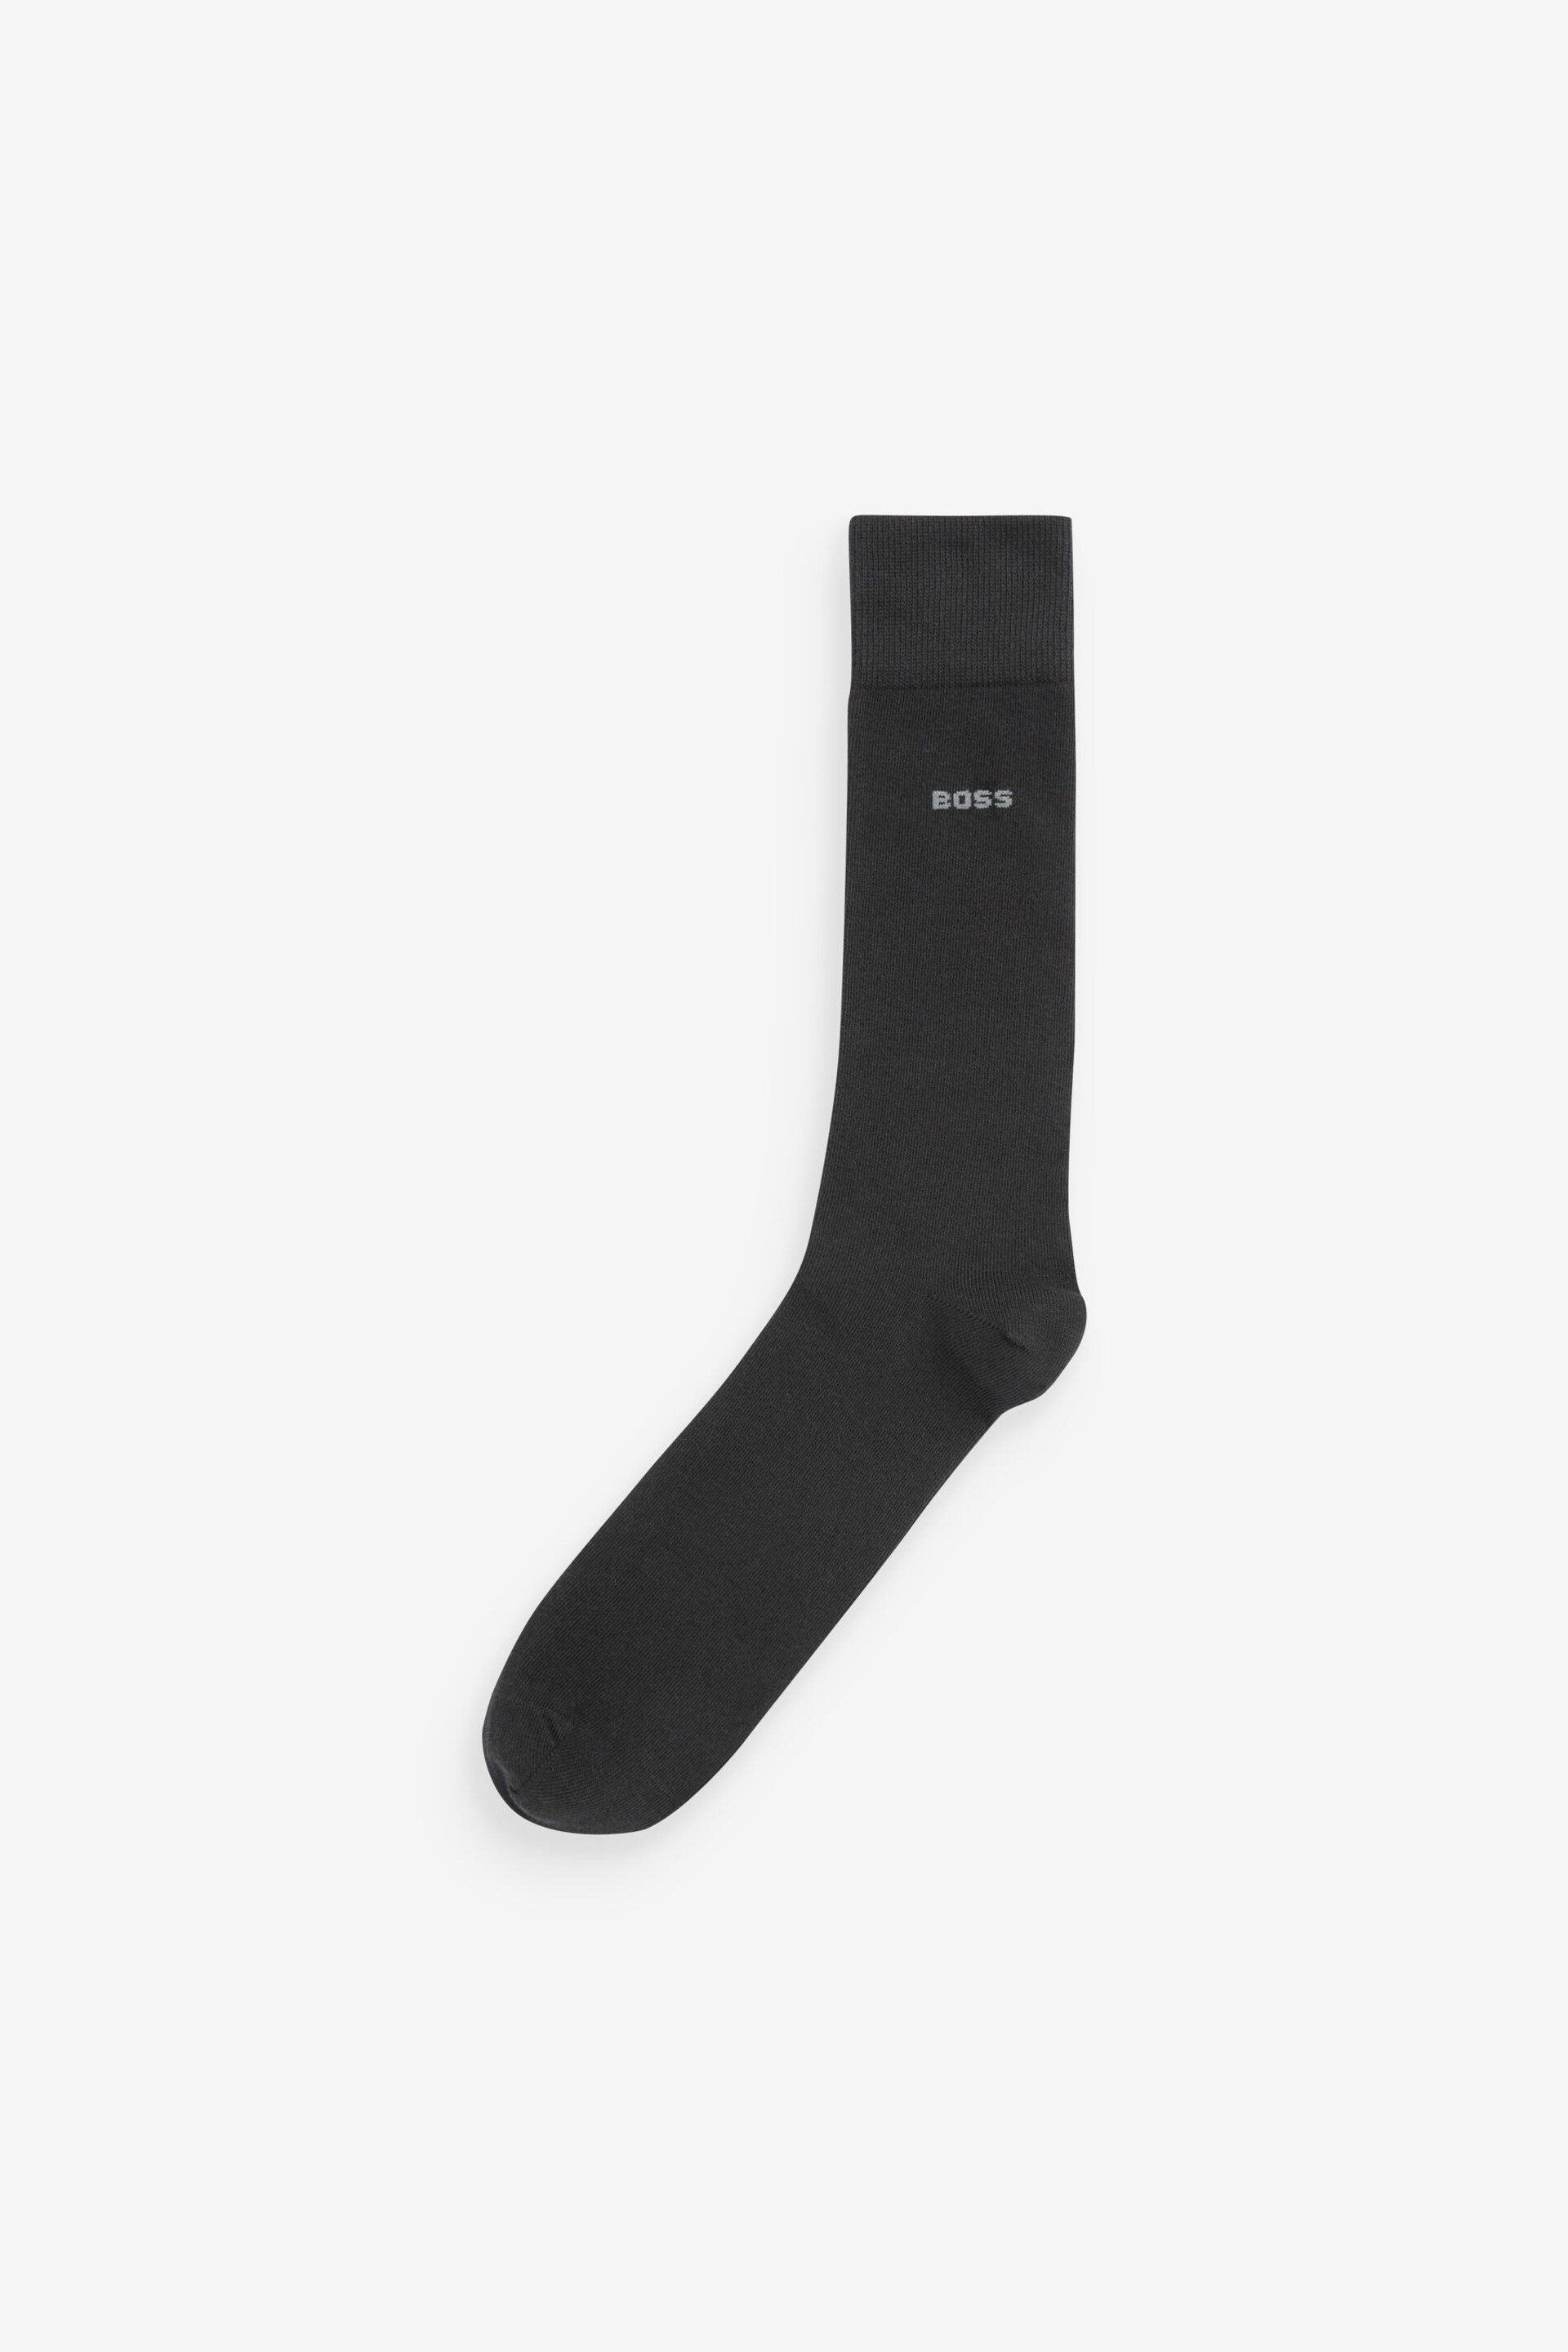 BOSS Black Uni Socks 5 Pack - Image 2 of 6